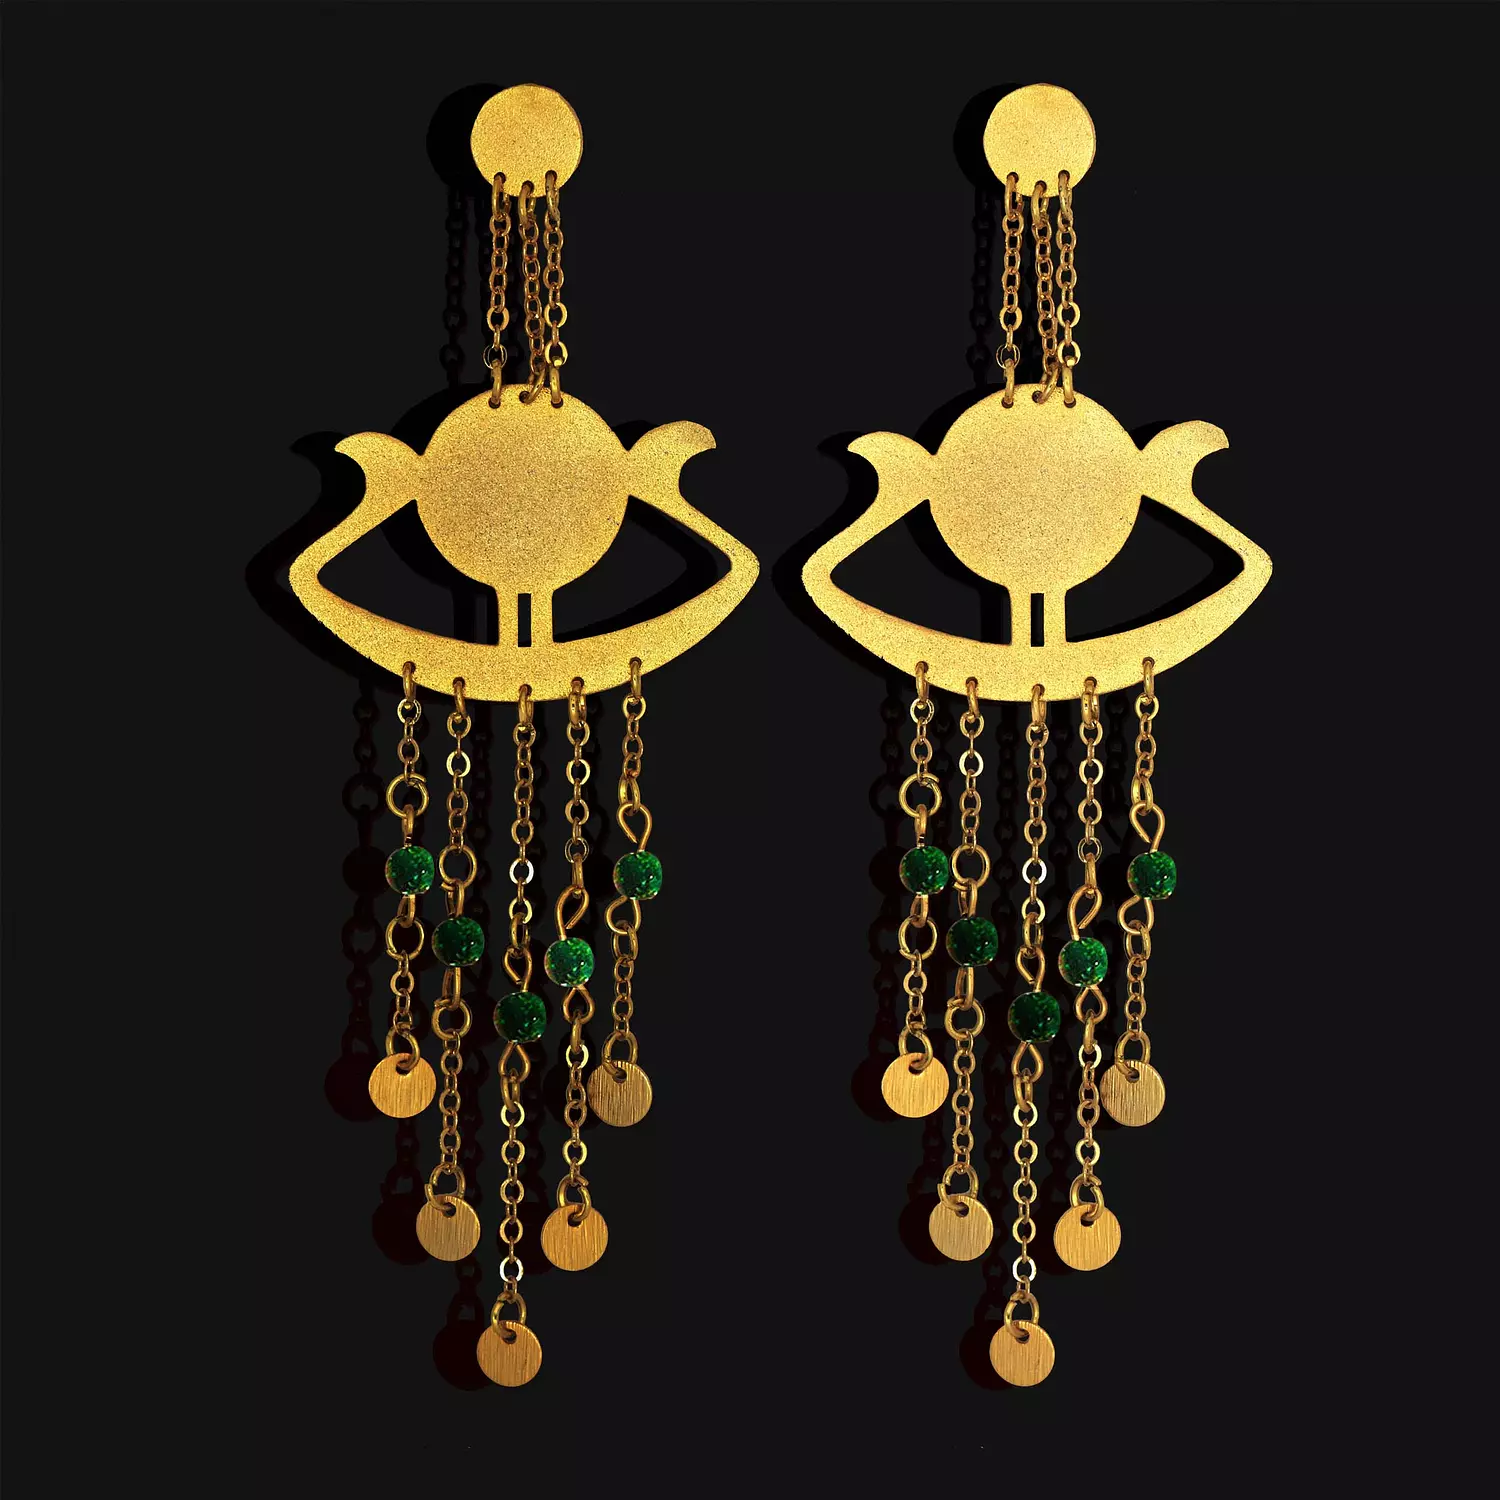 Sunboat earrings 2